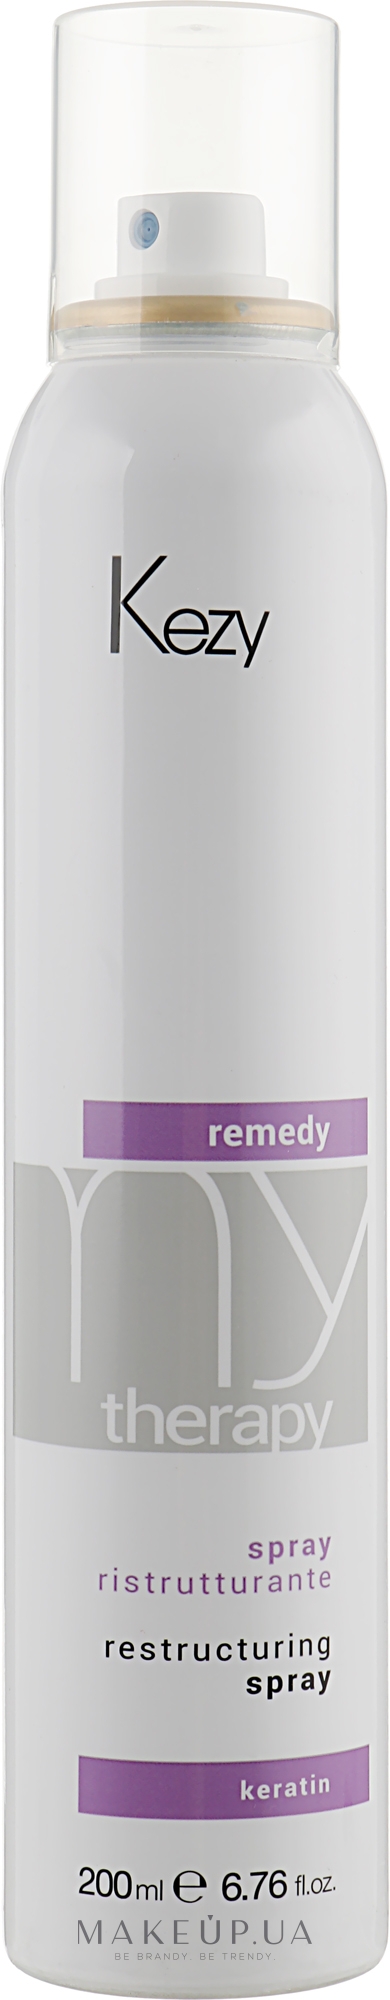 Відновлювальний змивний спрей для волосся - Kezy Remedy Restructuring Spray — фото 200ml